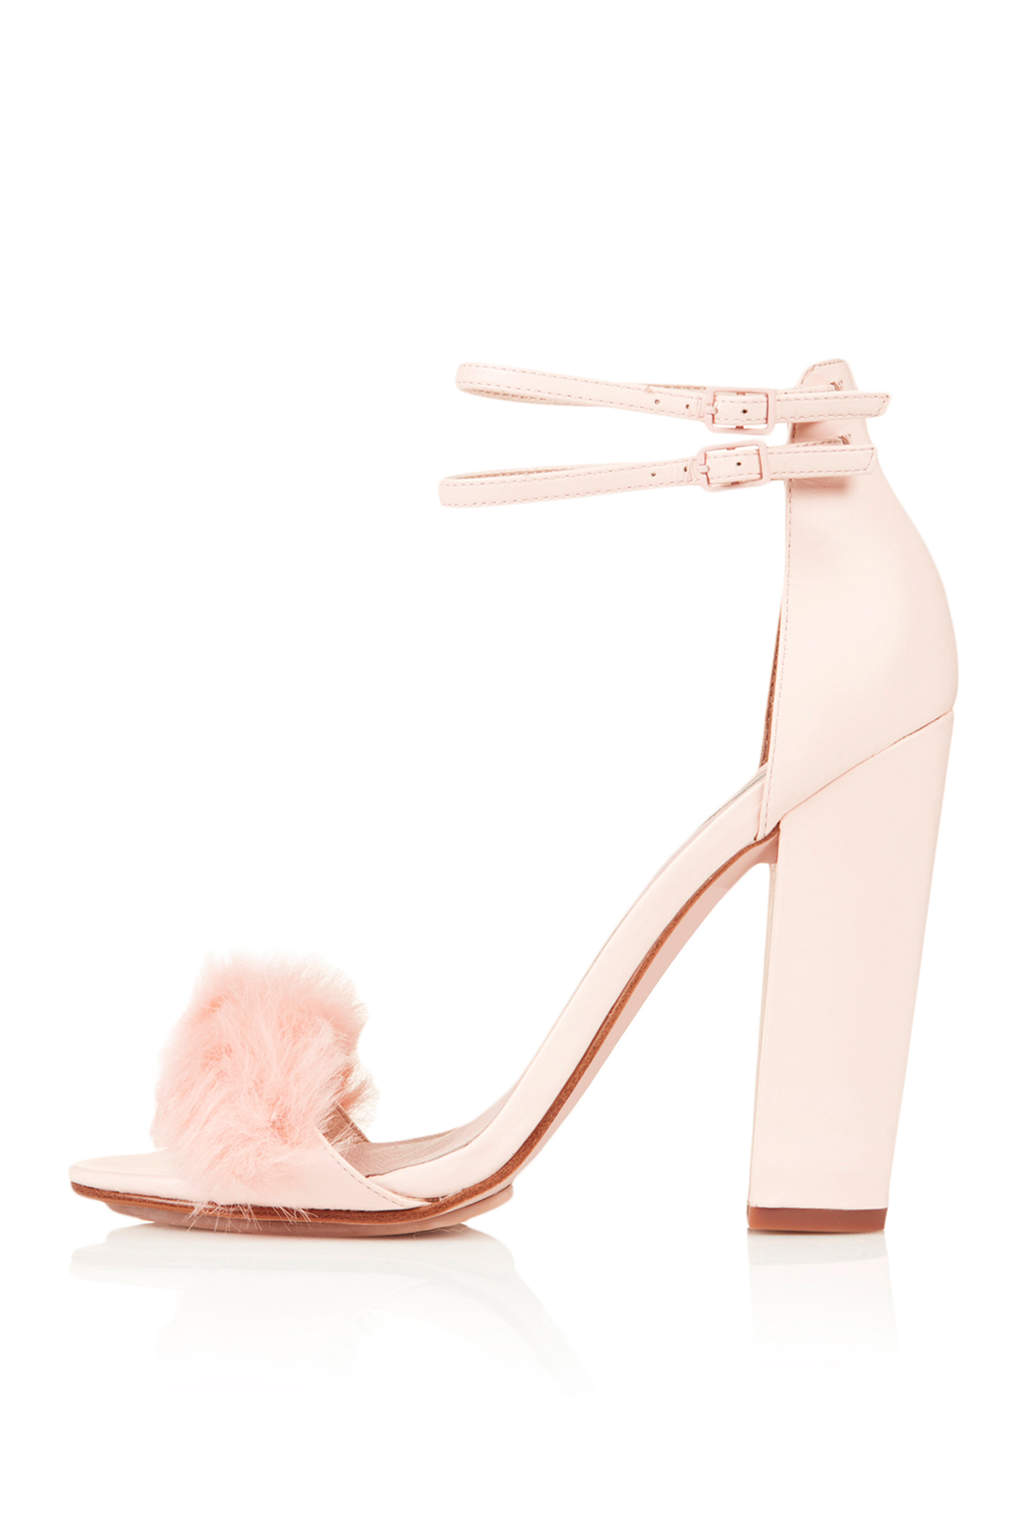 Shoe-Lust-Rabbit-Faux-Fur-Fluffy-Sandals3